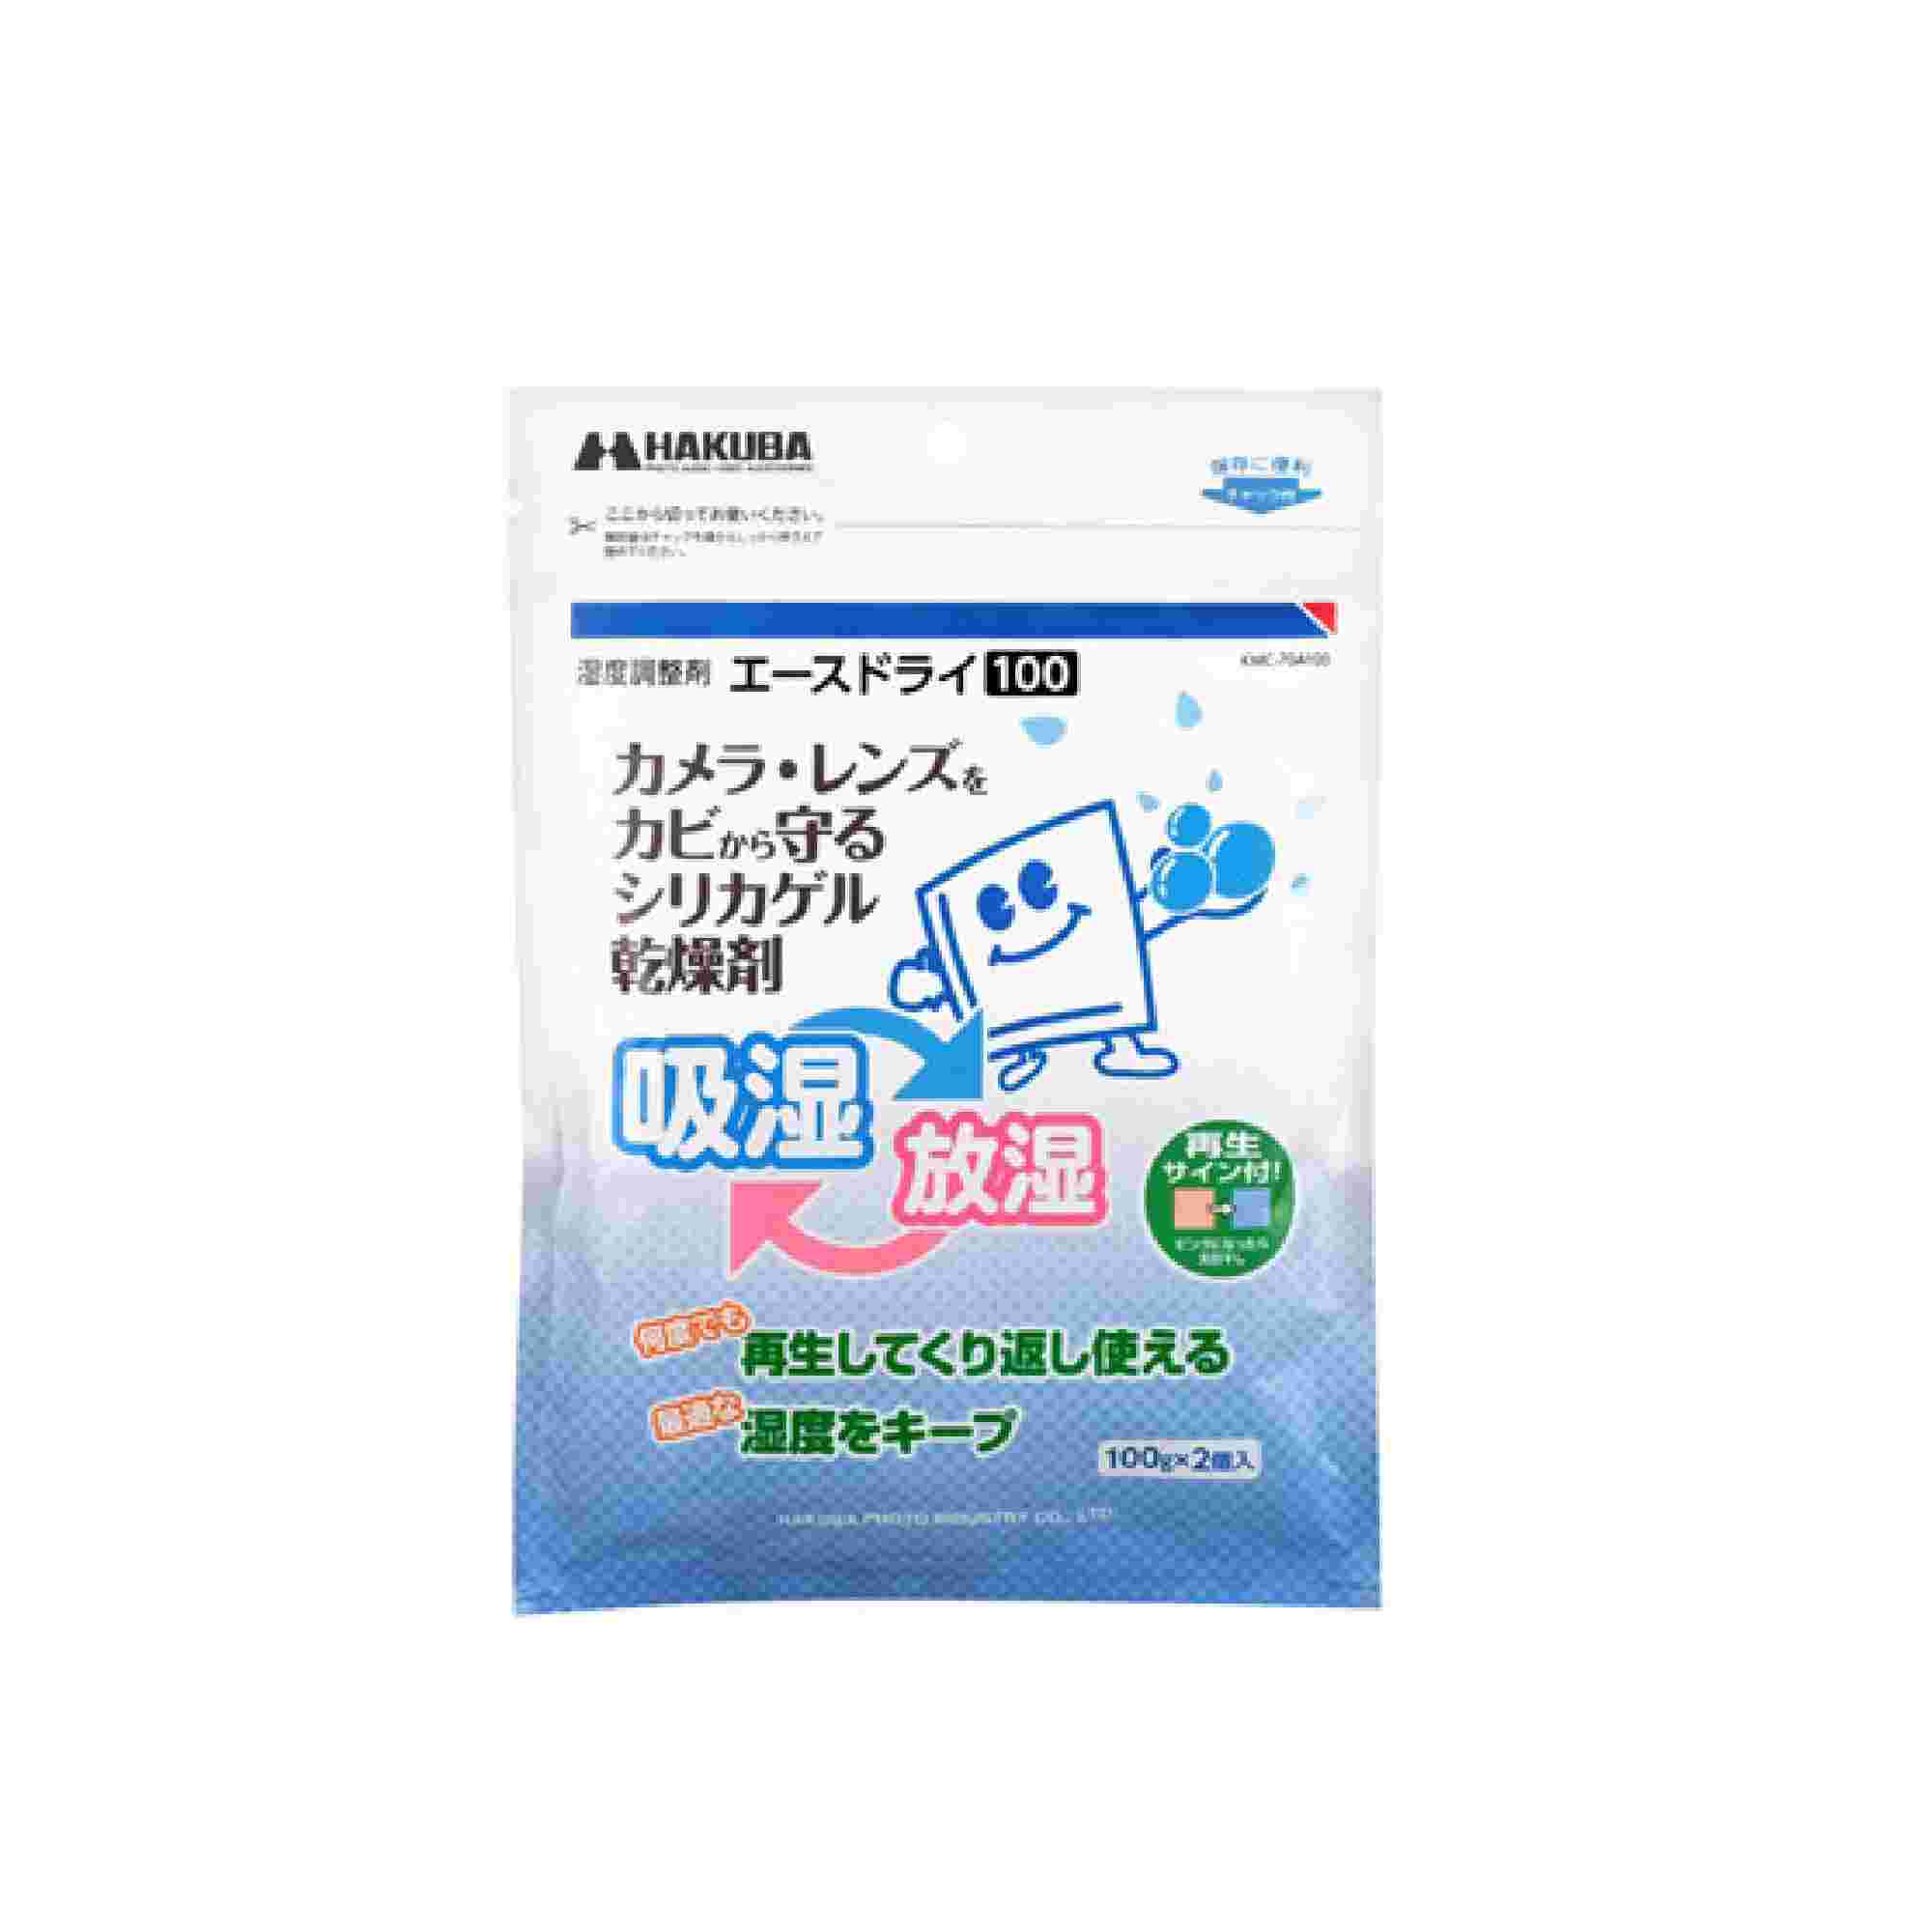 Hakuba 濕度調節劑 Ace Dry 2片裝 (100G) 清潔用品